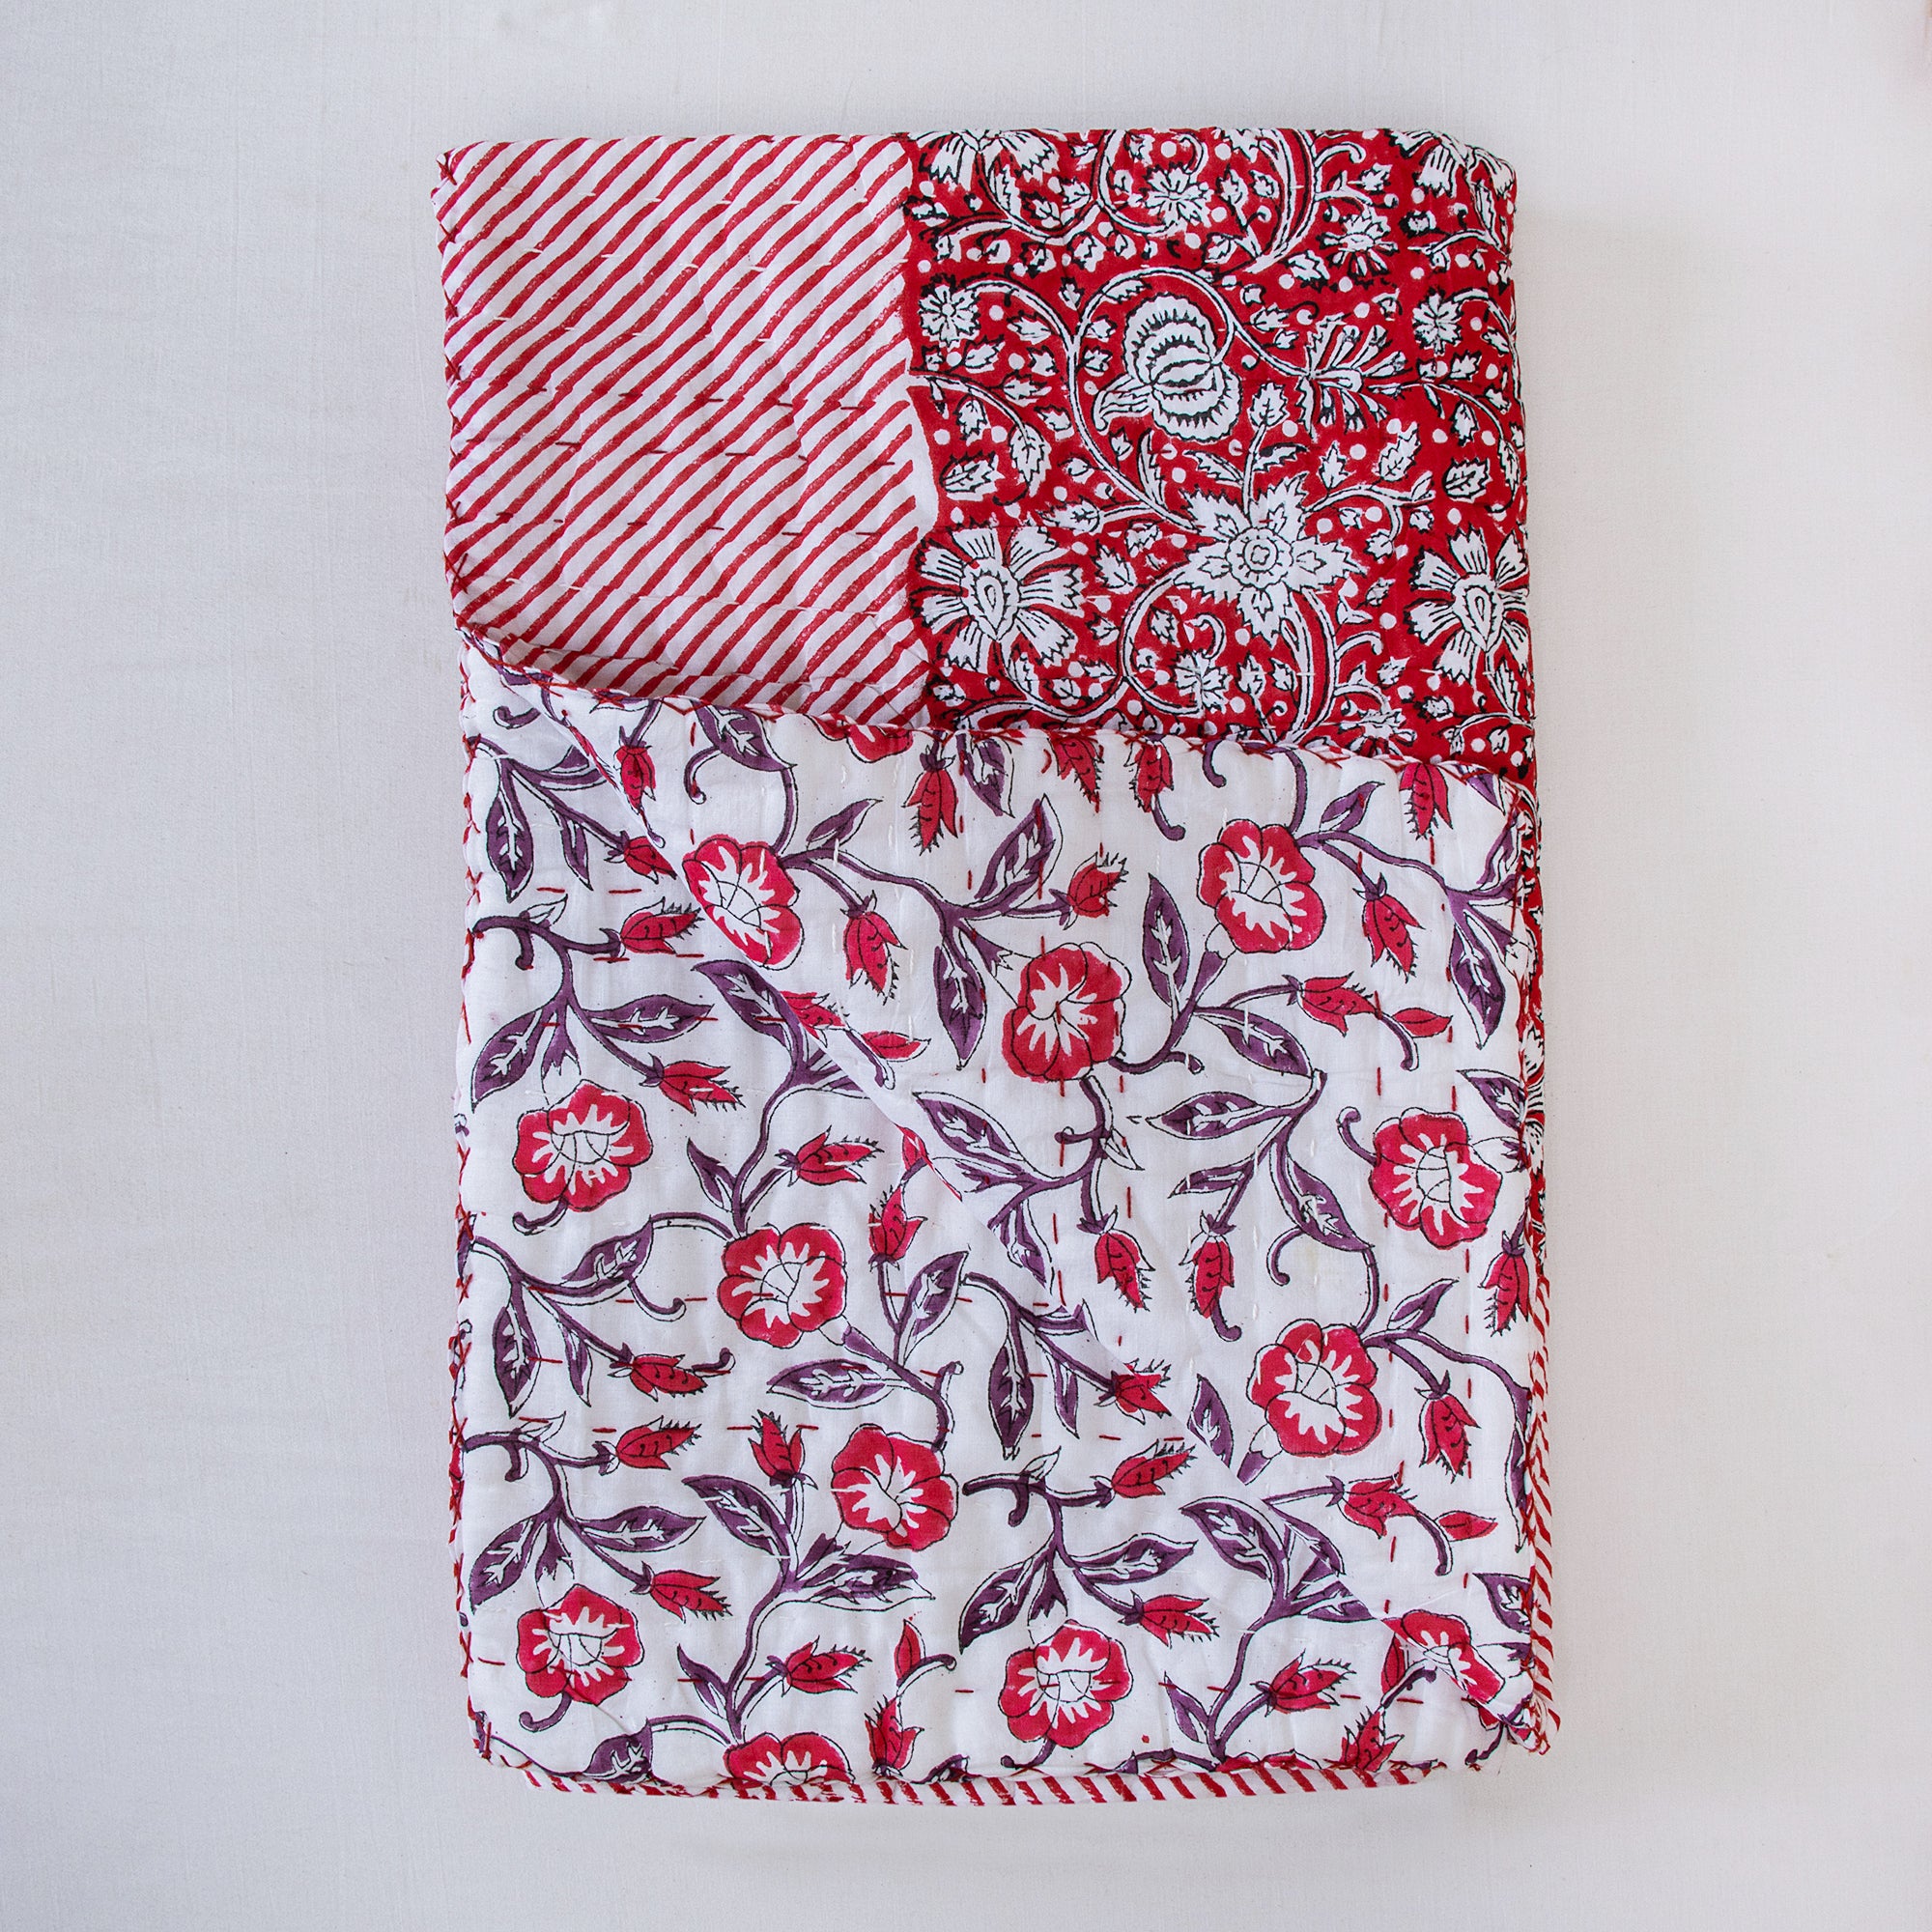 Newborn Blanket Red Floral Printed